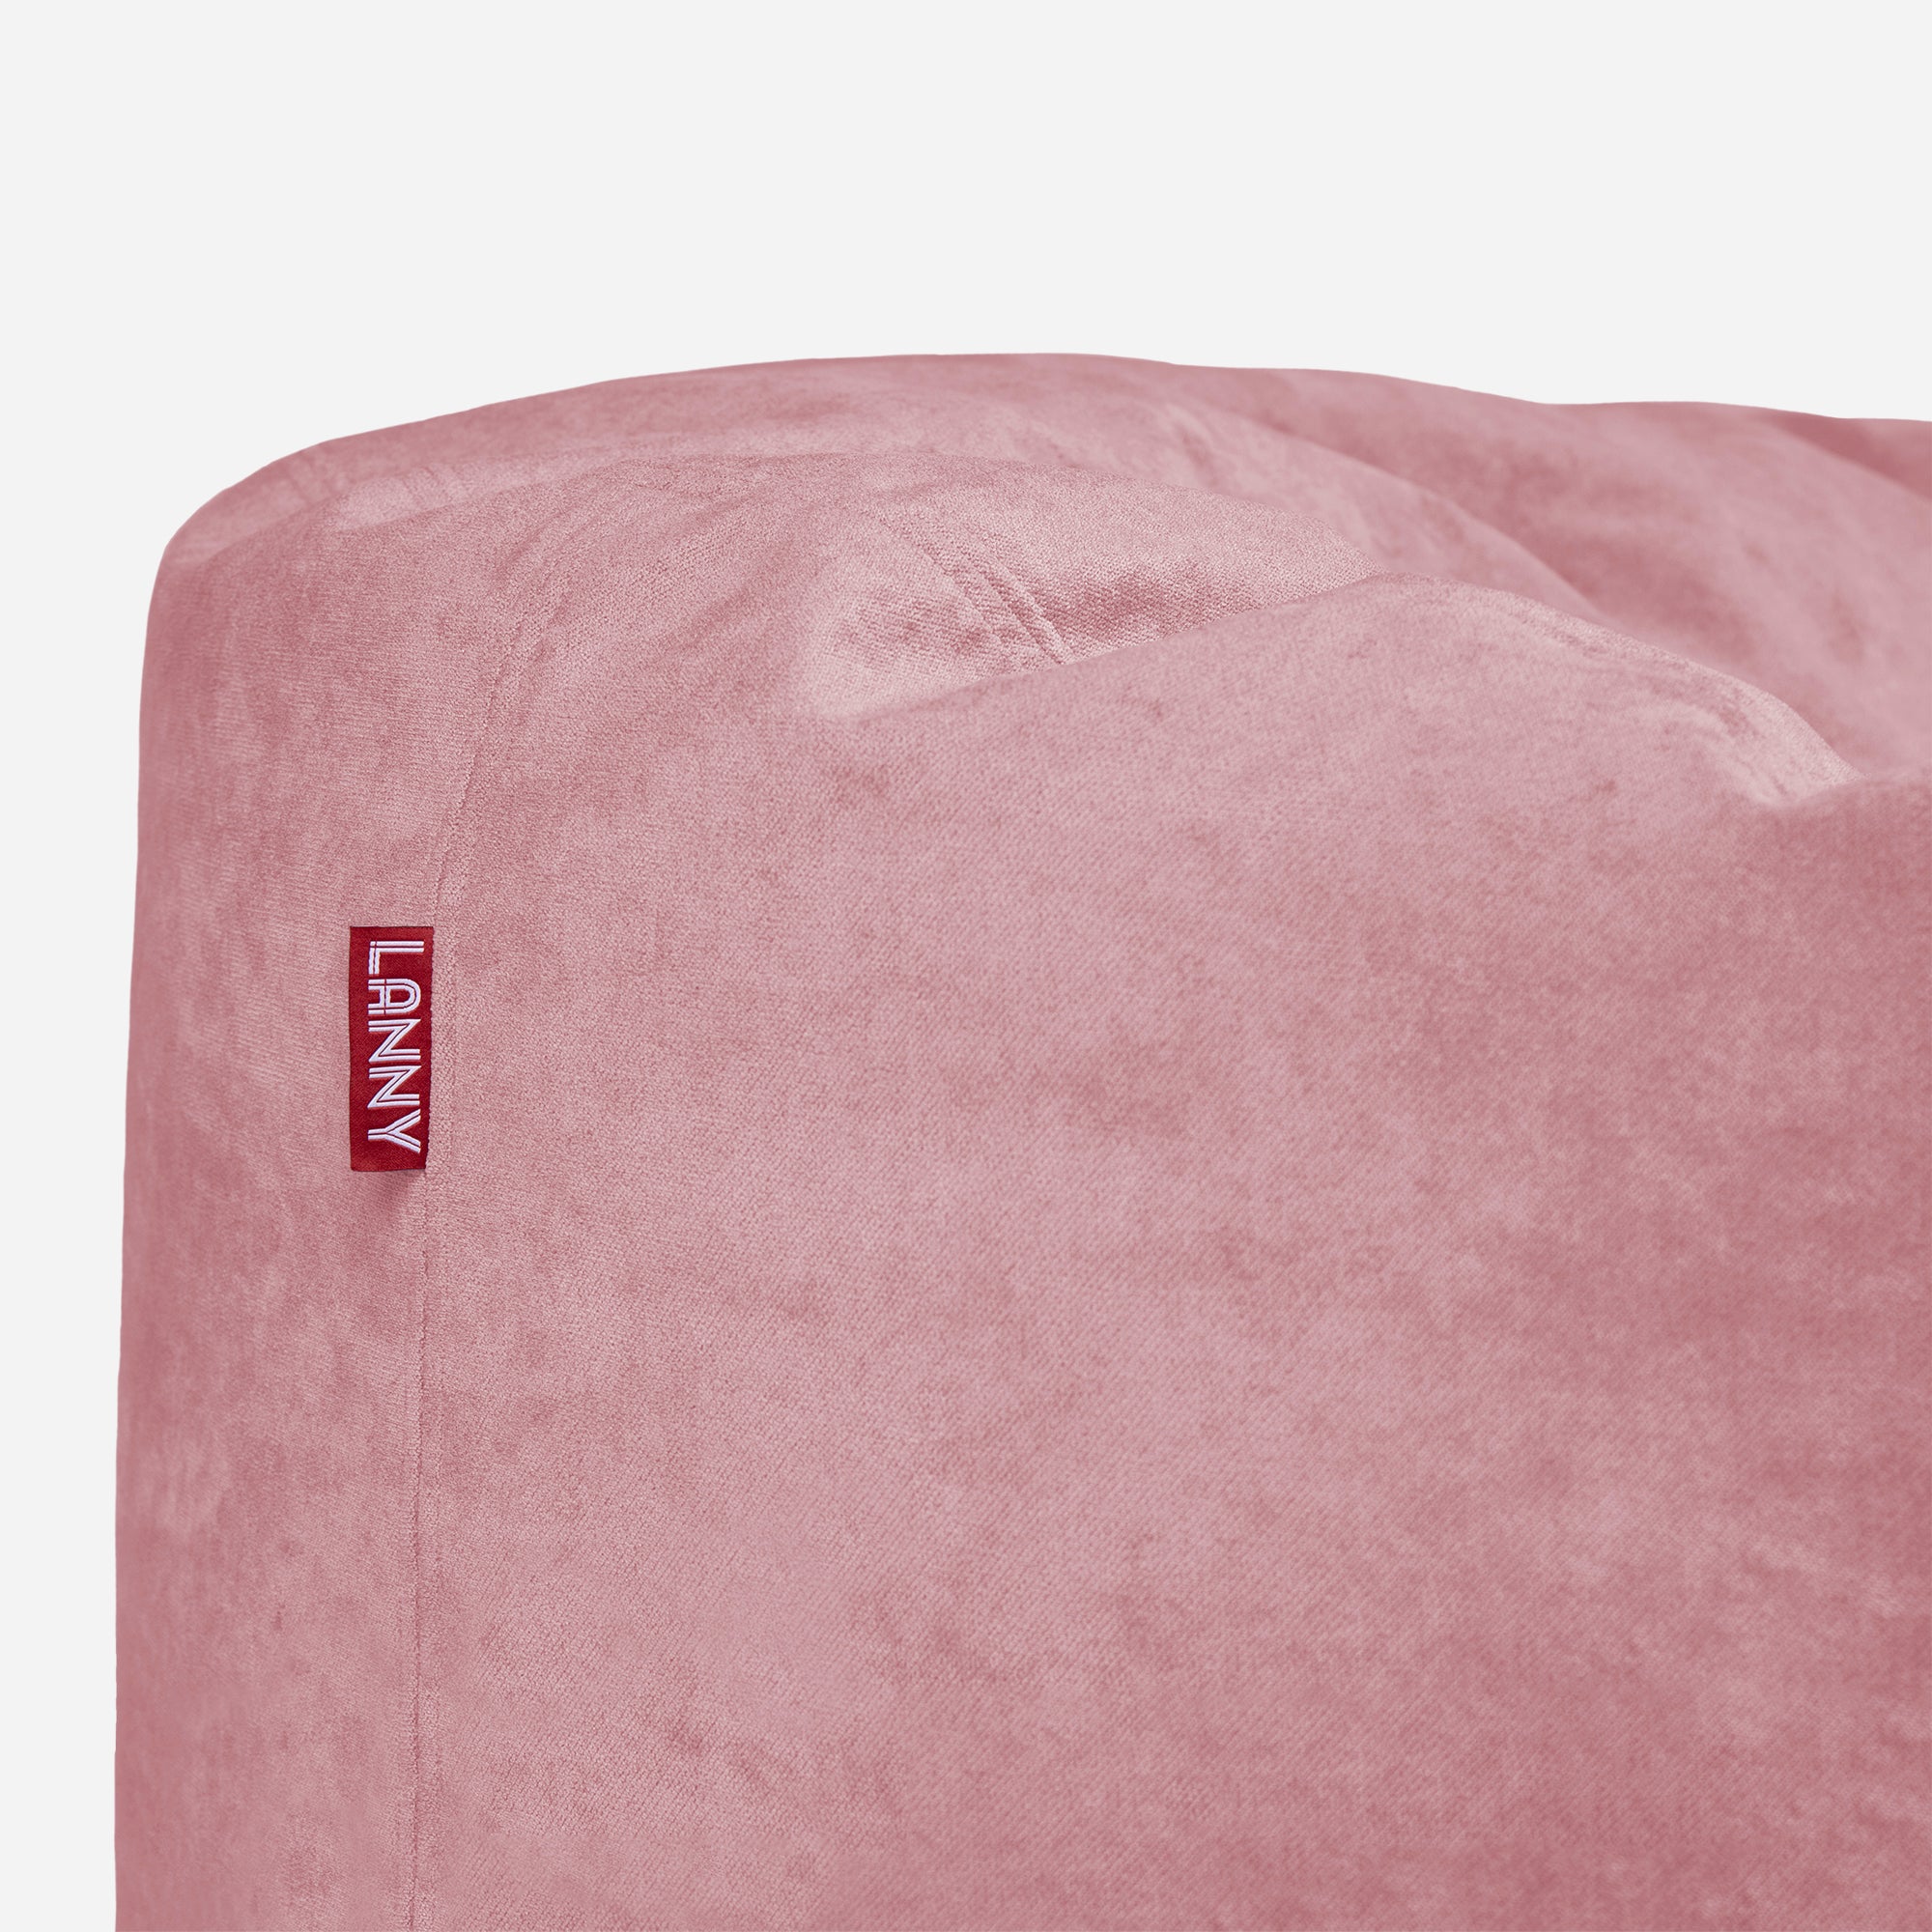 Large Original Aldo Pink Bean Bag